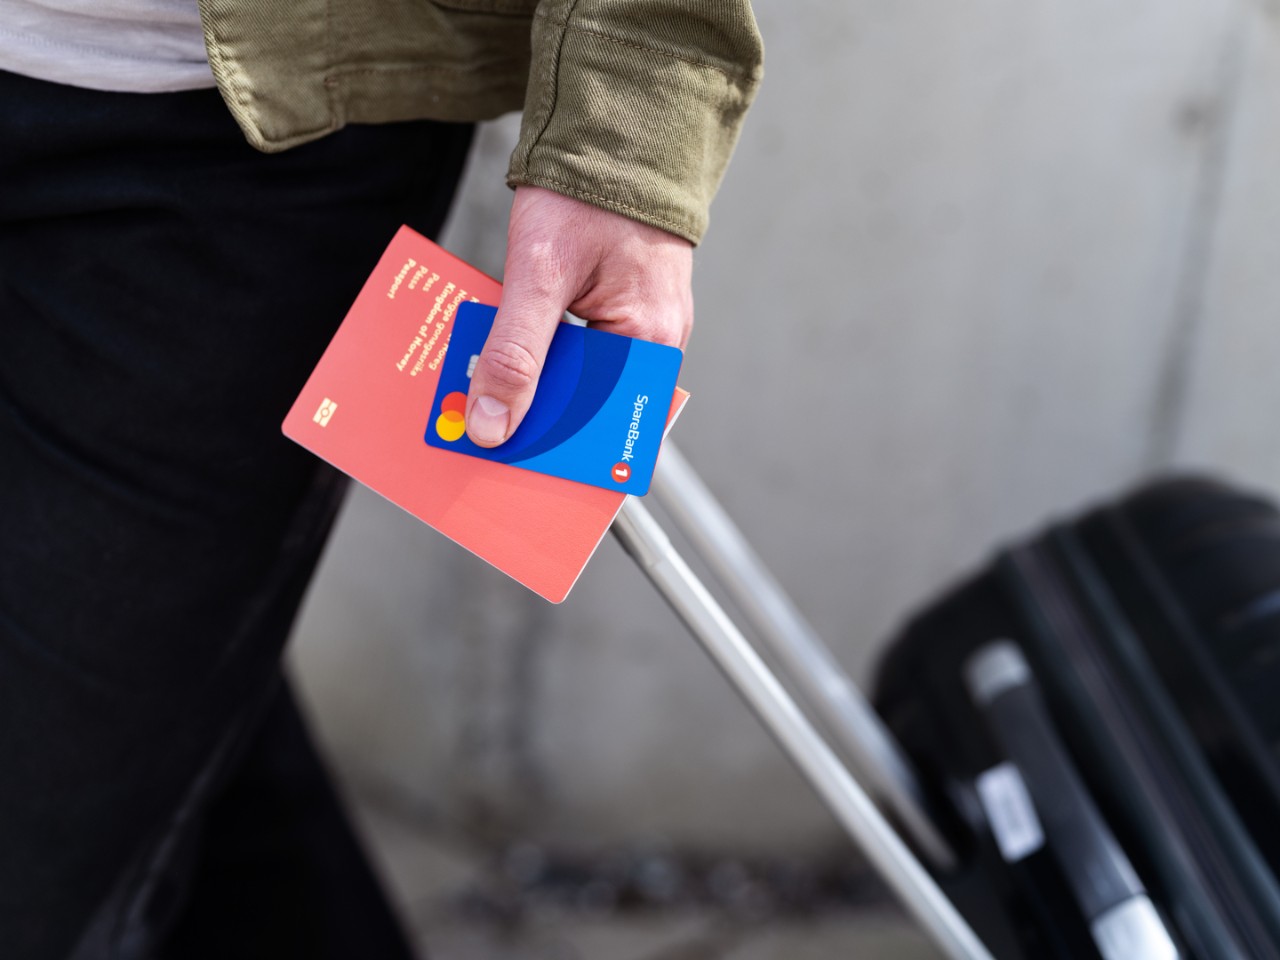 Hånd som holder kredittkort, pass og koffert